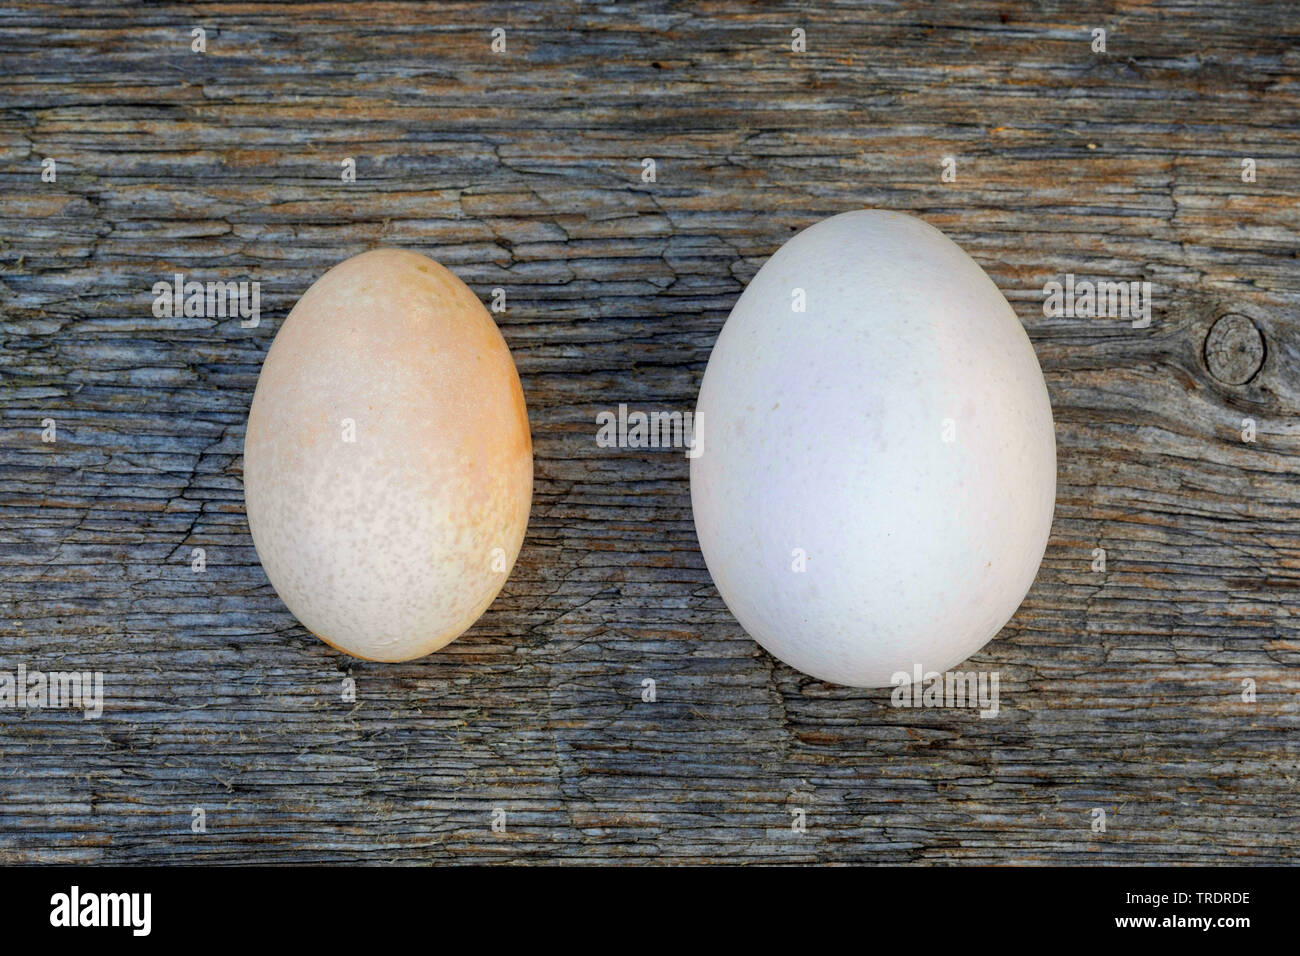 Les oiseaux domestiques (Gallus gallus f. domestica), comparaison des oeufs d'une poule avec un oeuf d'une poule de Bantam, Allemagne Banque D'Images